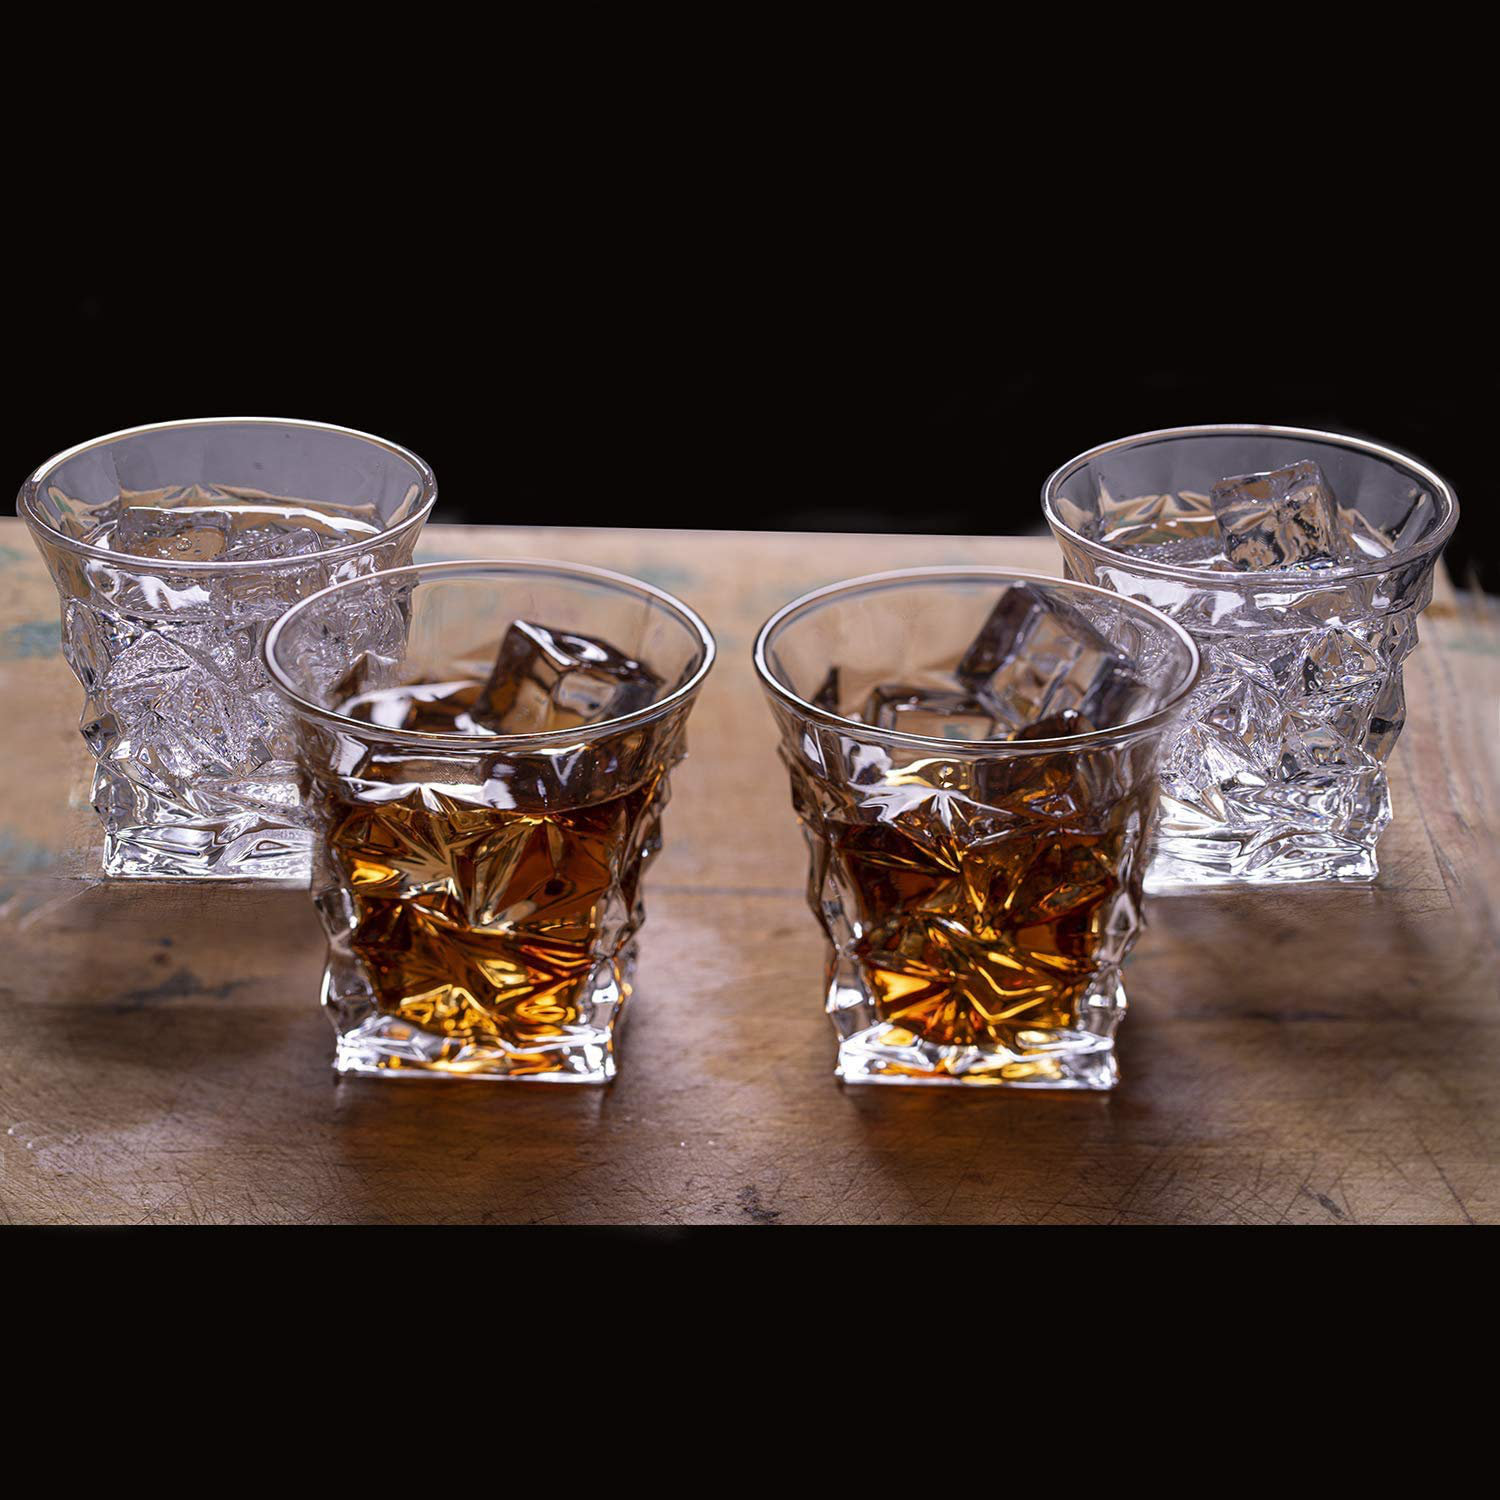 10oz Fancy Diamond Whiskey Glasses ;12oz Crystal Drinking Glasses